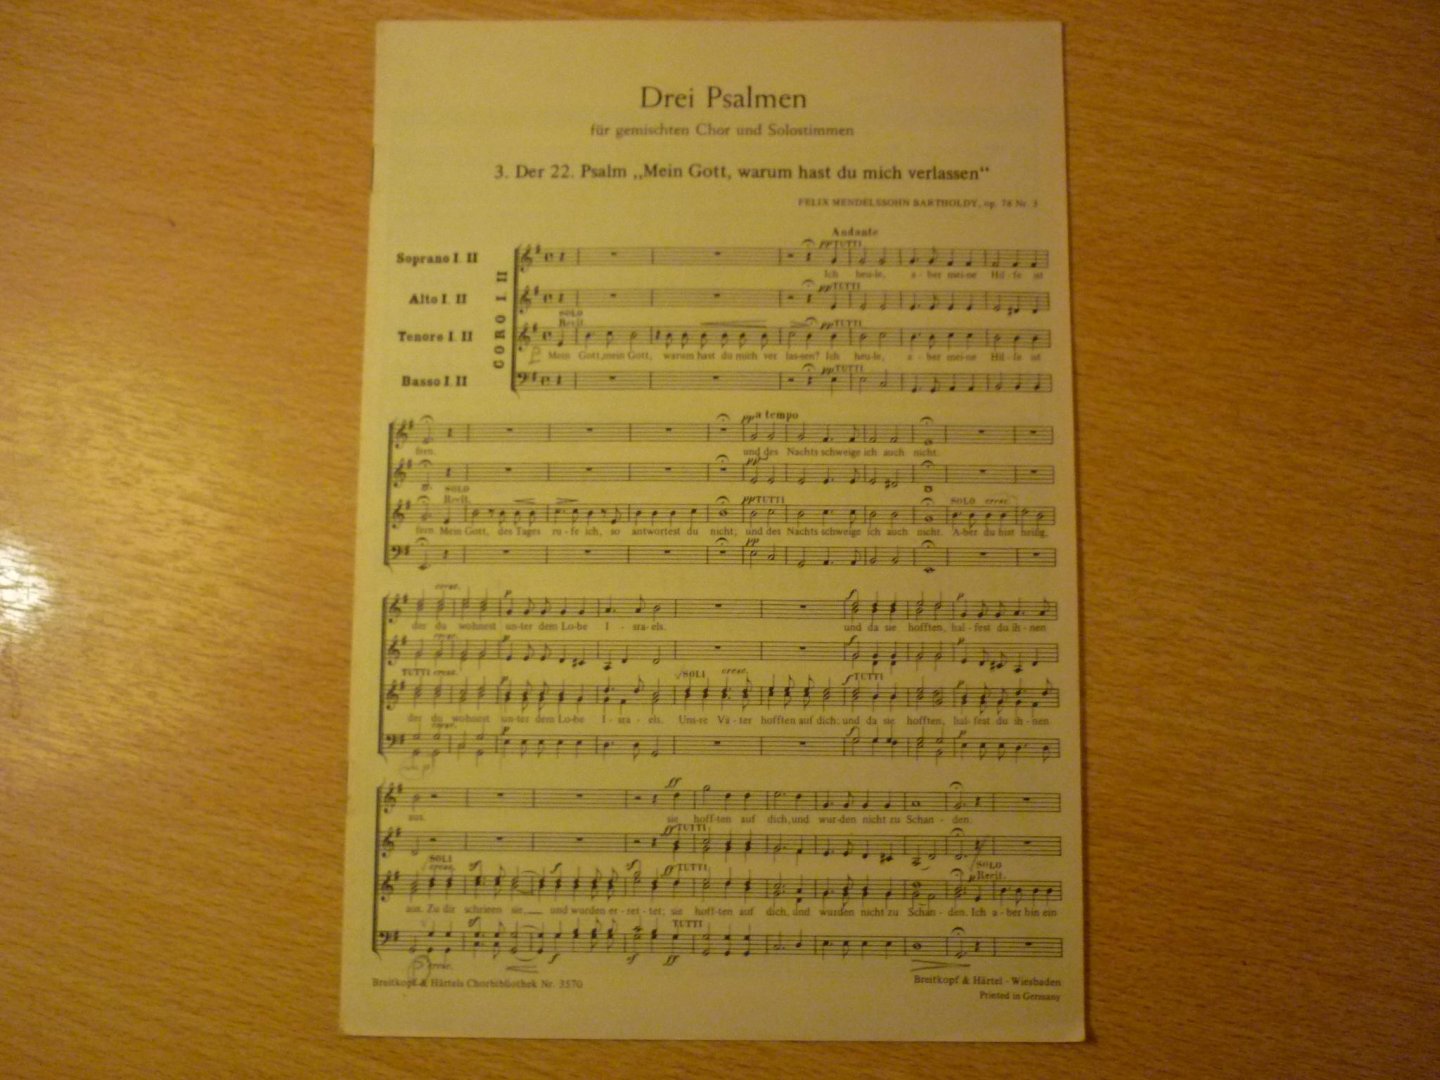 Mendelssohn-Bartholdy, Felix; (1809-1847) - Drei Psalmen; der 22. Psalm "mein Goot, warum hast du mich verlassen"; Op. 78 Nr. 3; fur gemischten Chor und Solostimmen